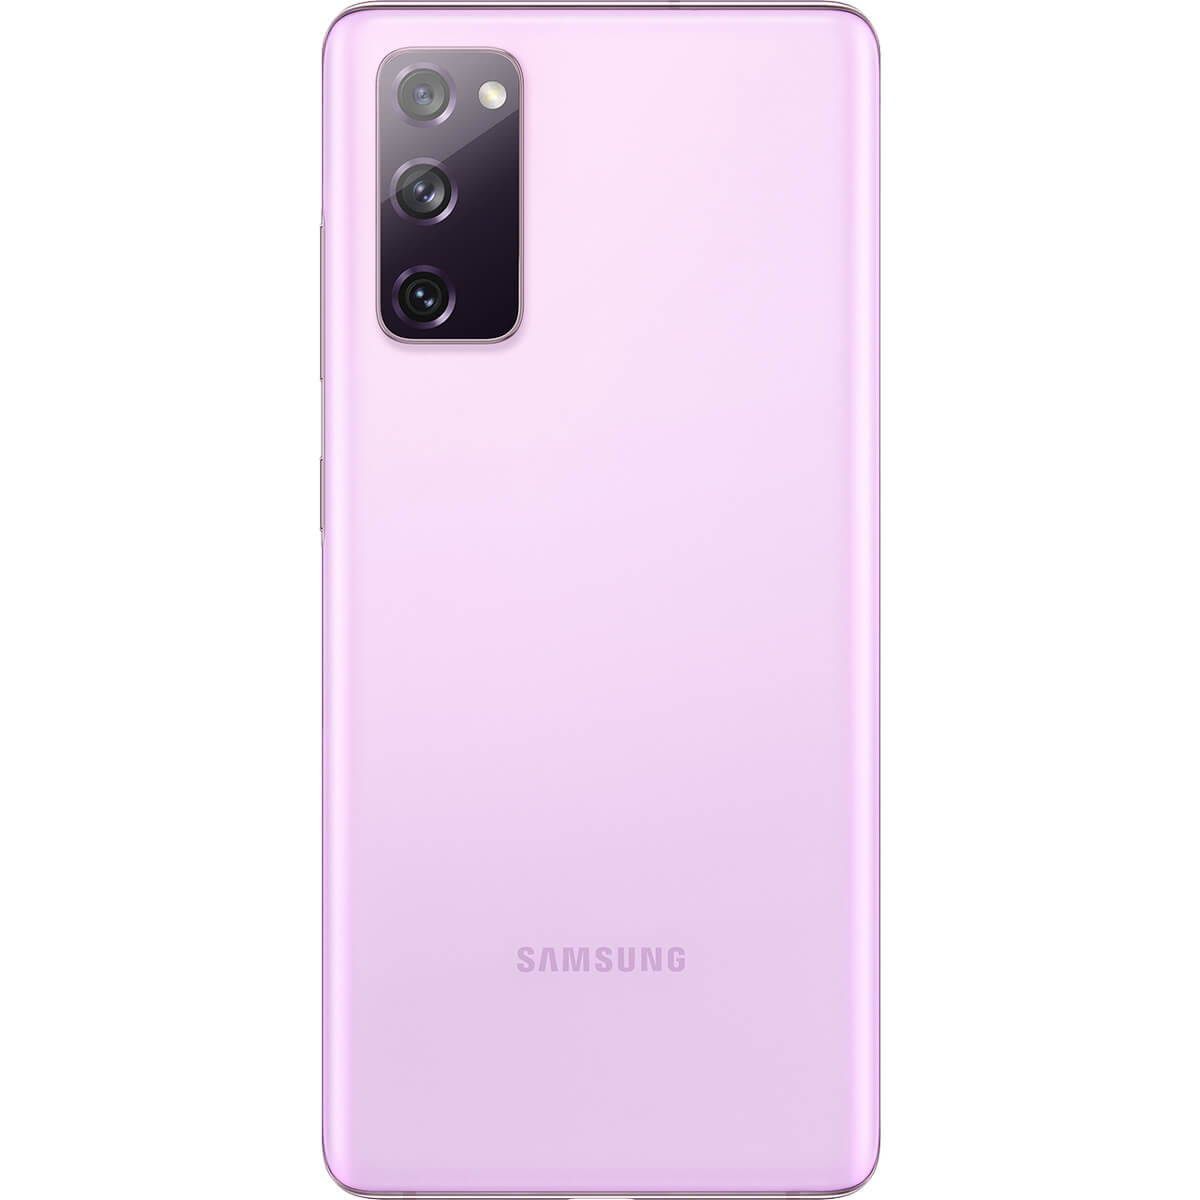 گوشی موبایل سامسونگ Galaxy S20 FE 5G ظرفیت 128 گیگابایت و رم 8 گیگابایت